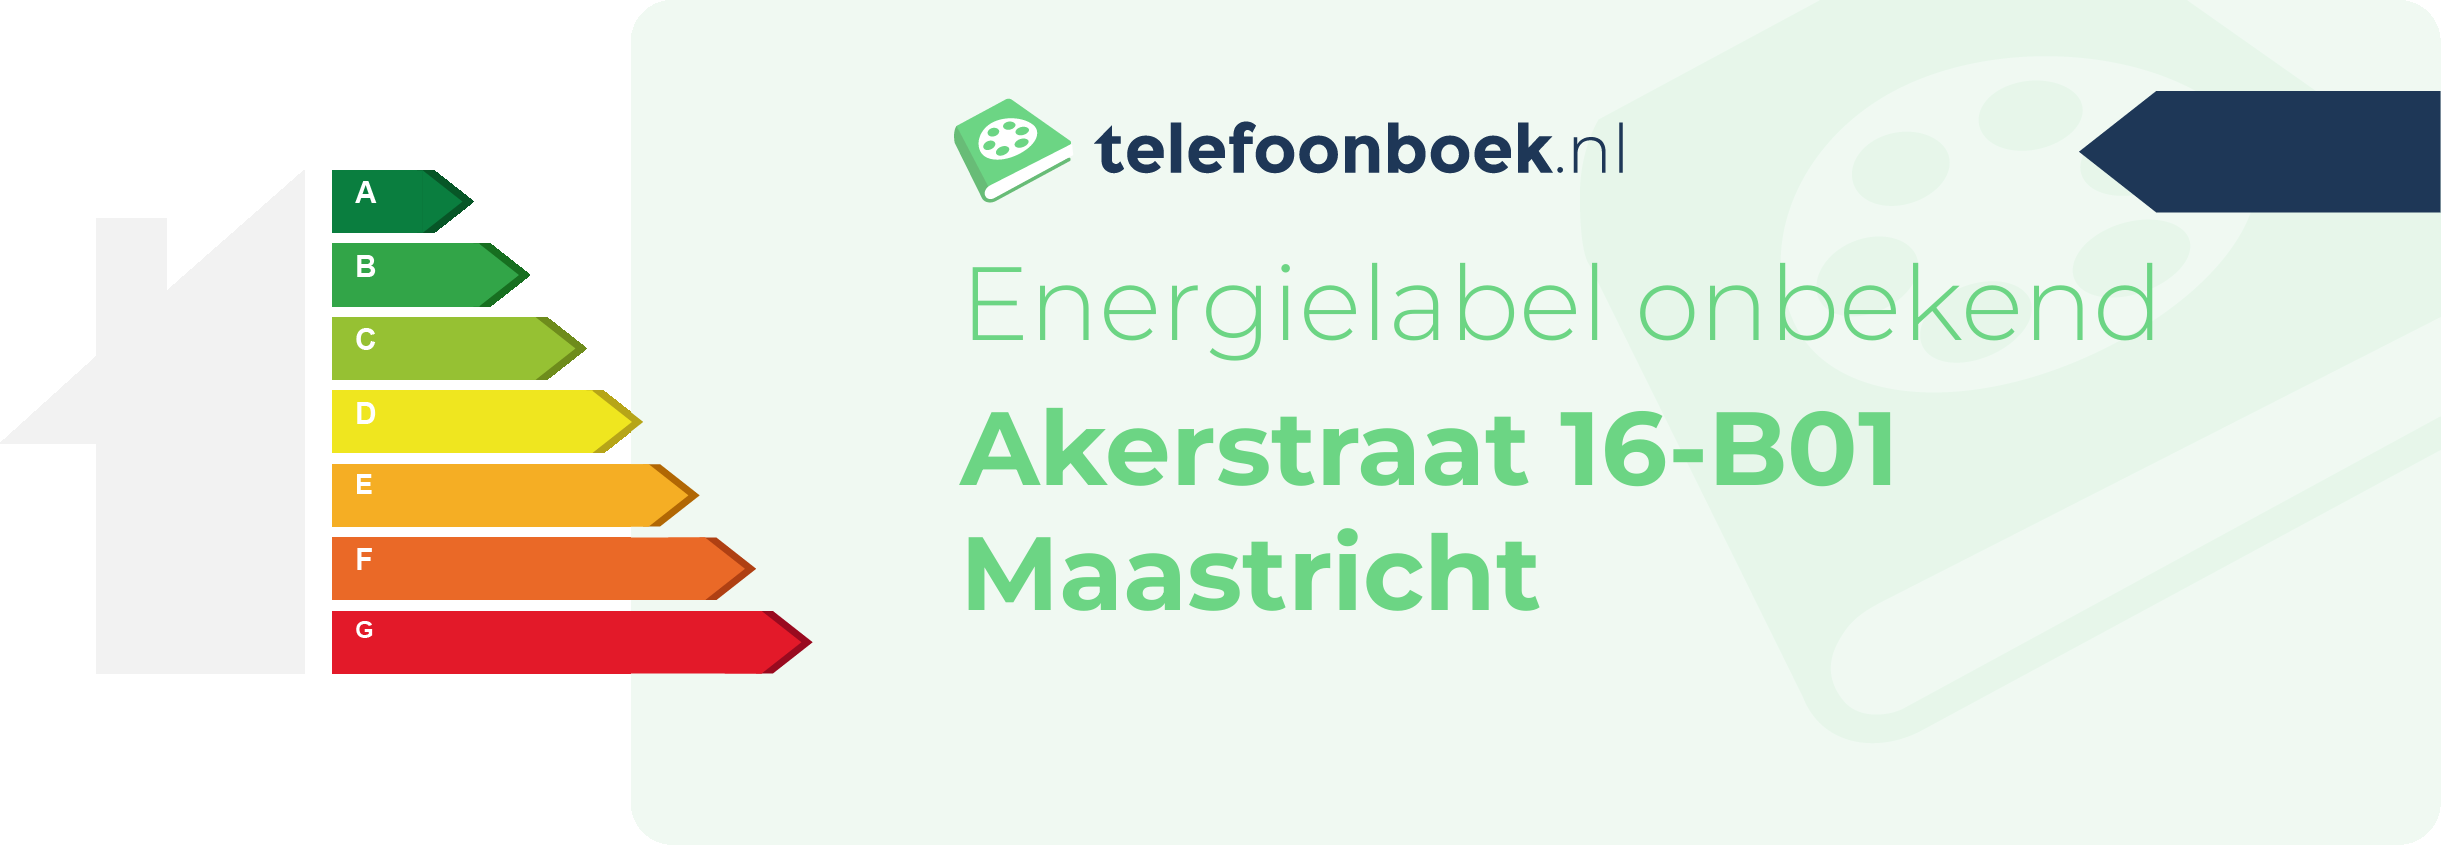 Energielabel Akerstraat 16-B01 Maastricht